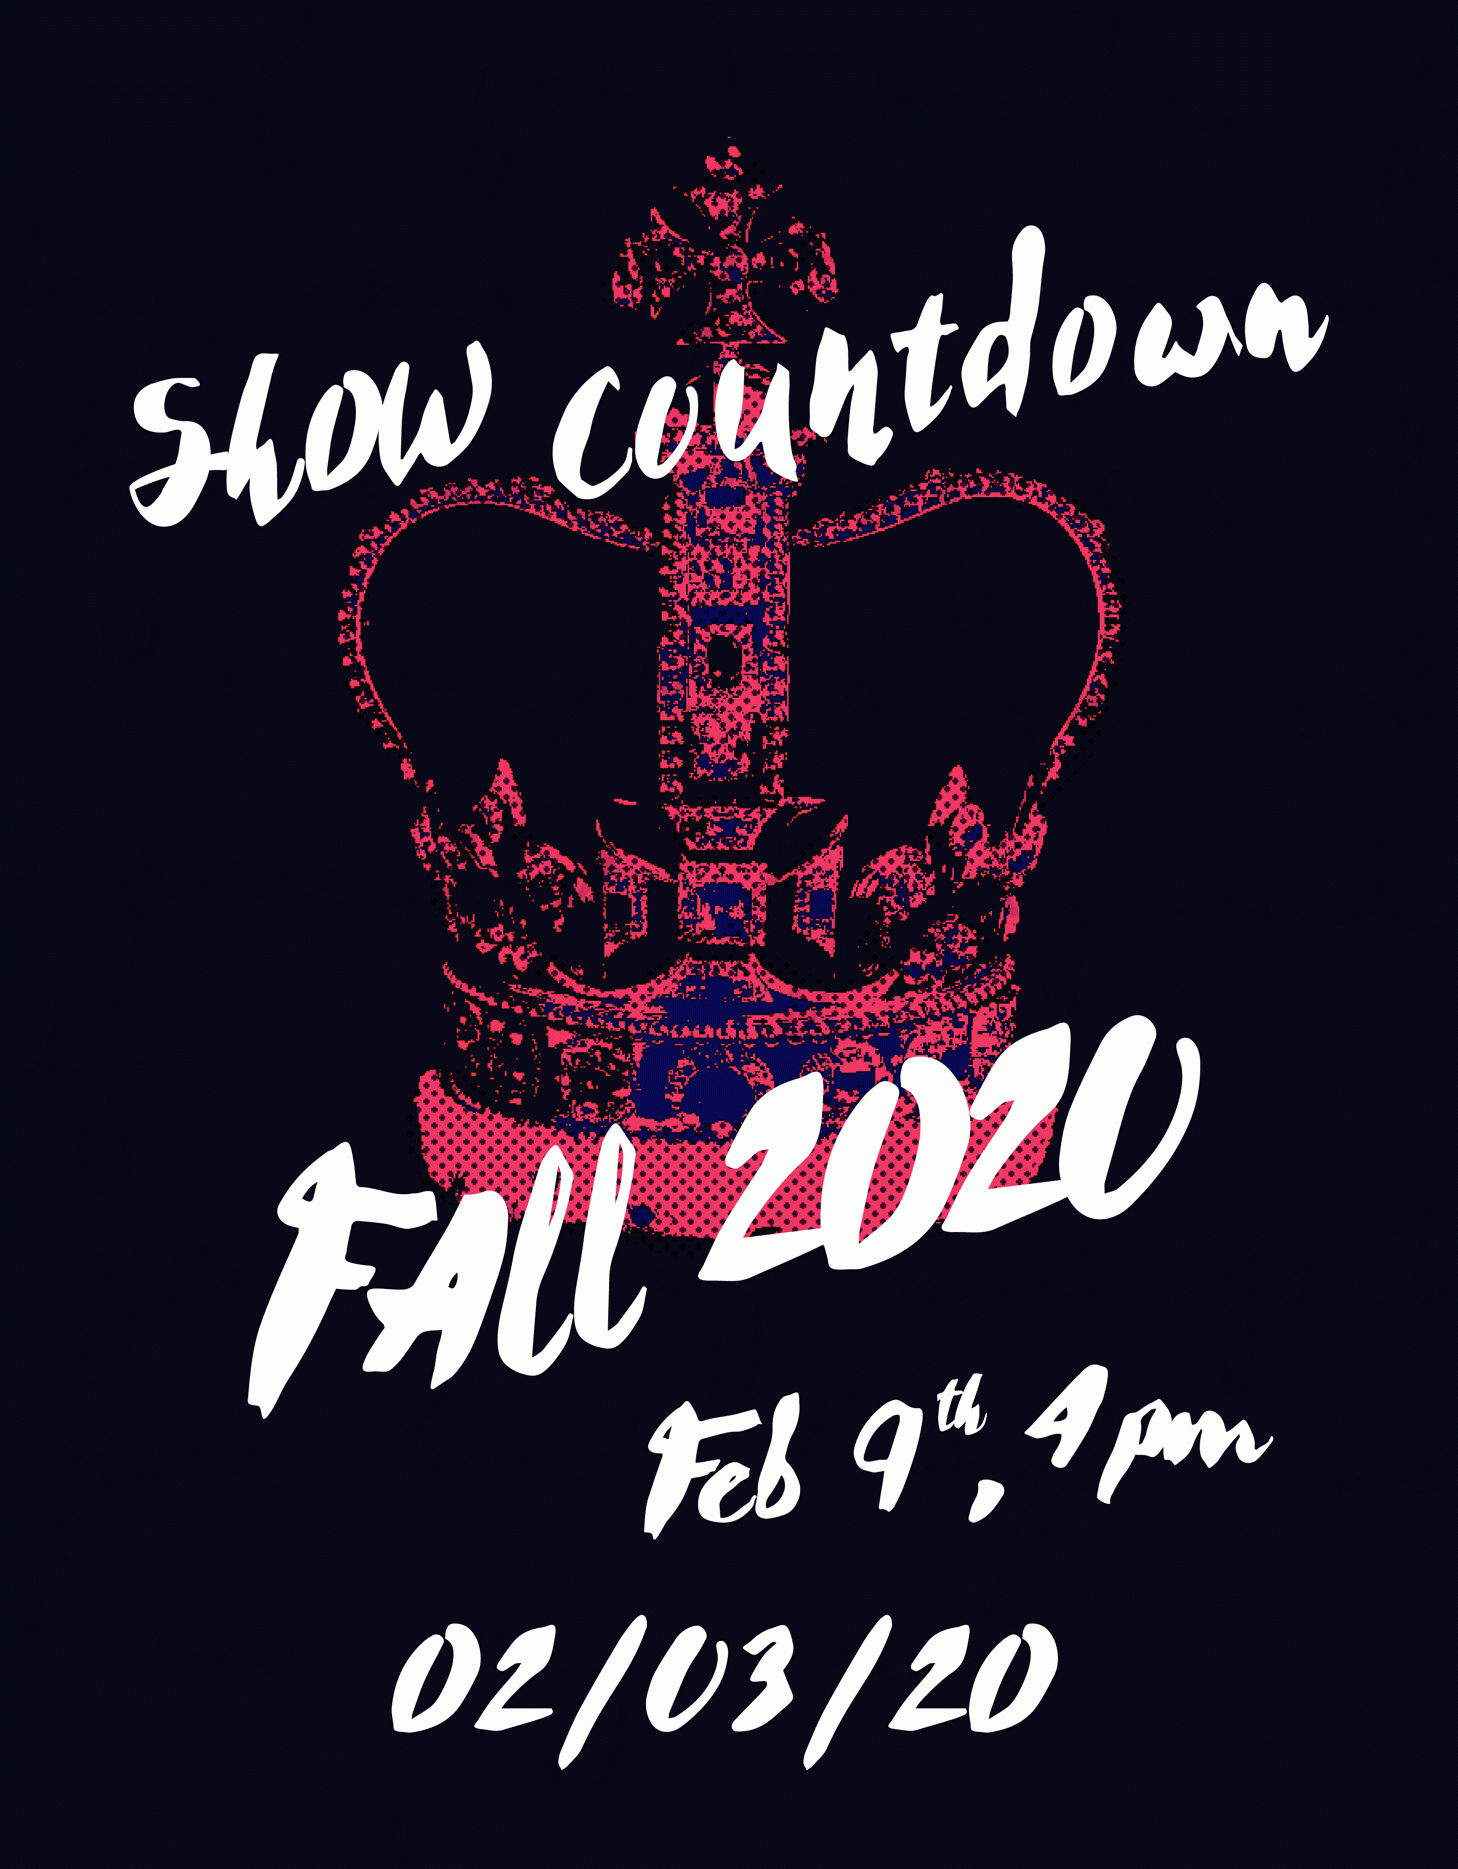 Fall 2020 NYFW Show Countdown